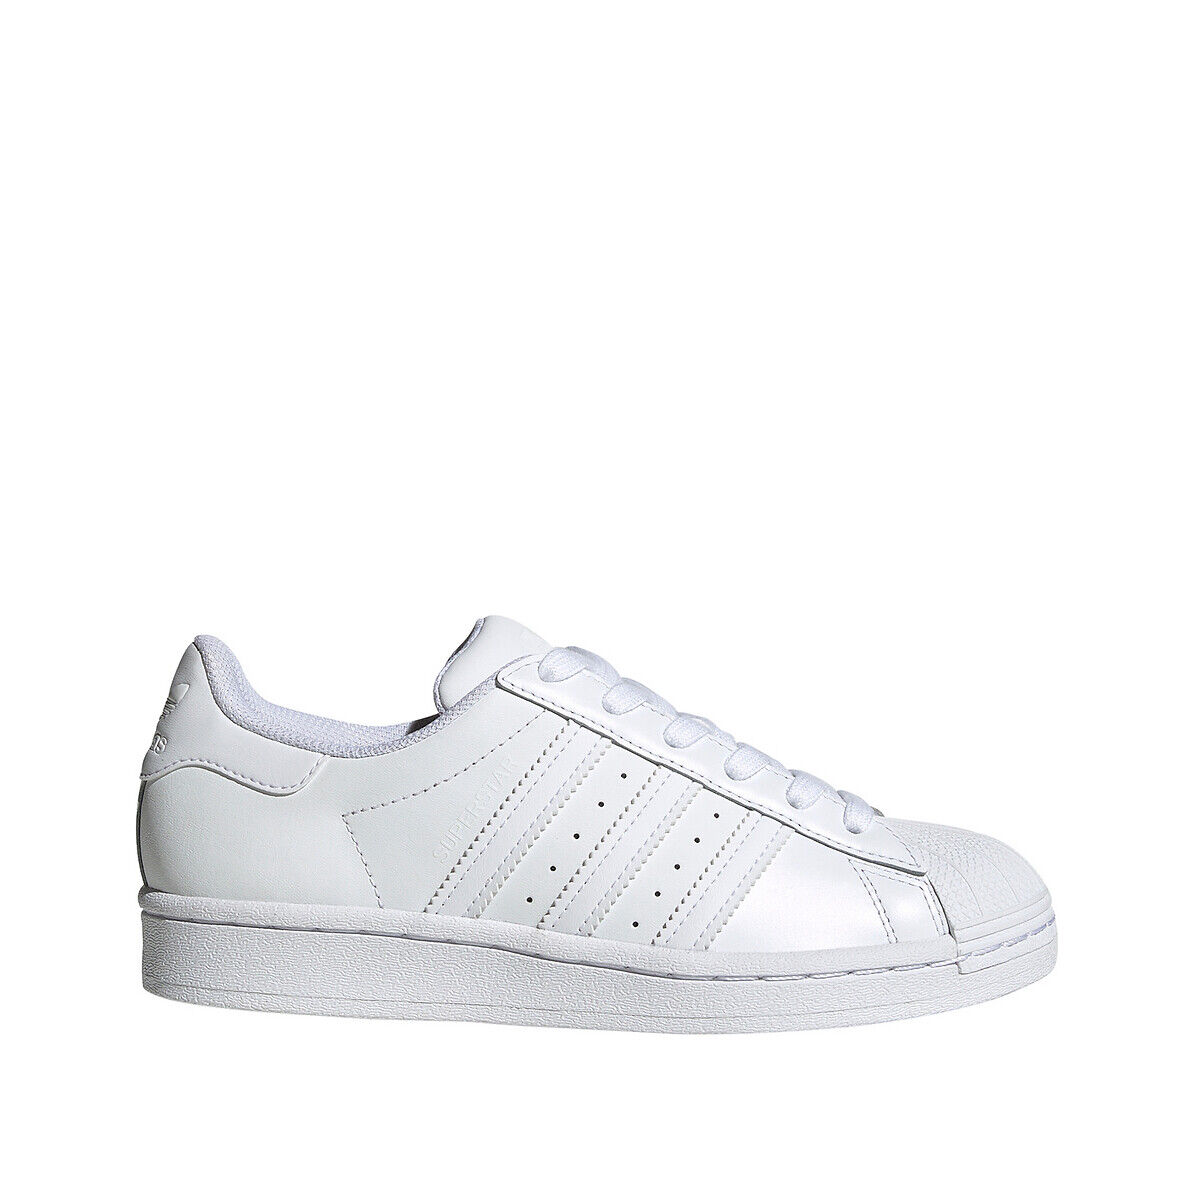 Adidas Originals Sapatilhas Superstar   Branco